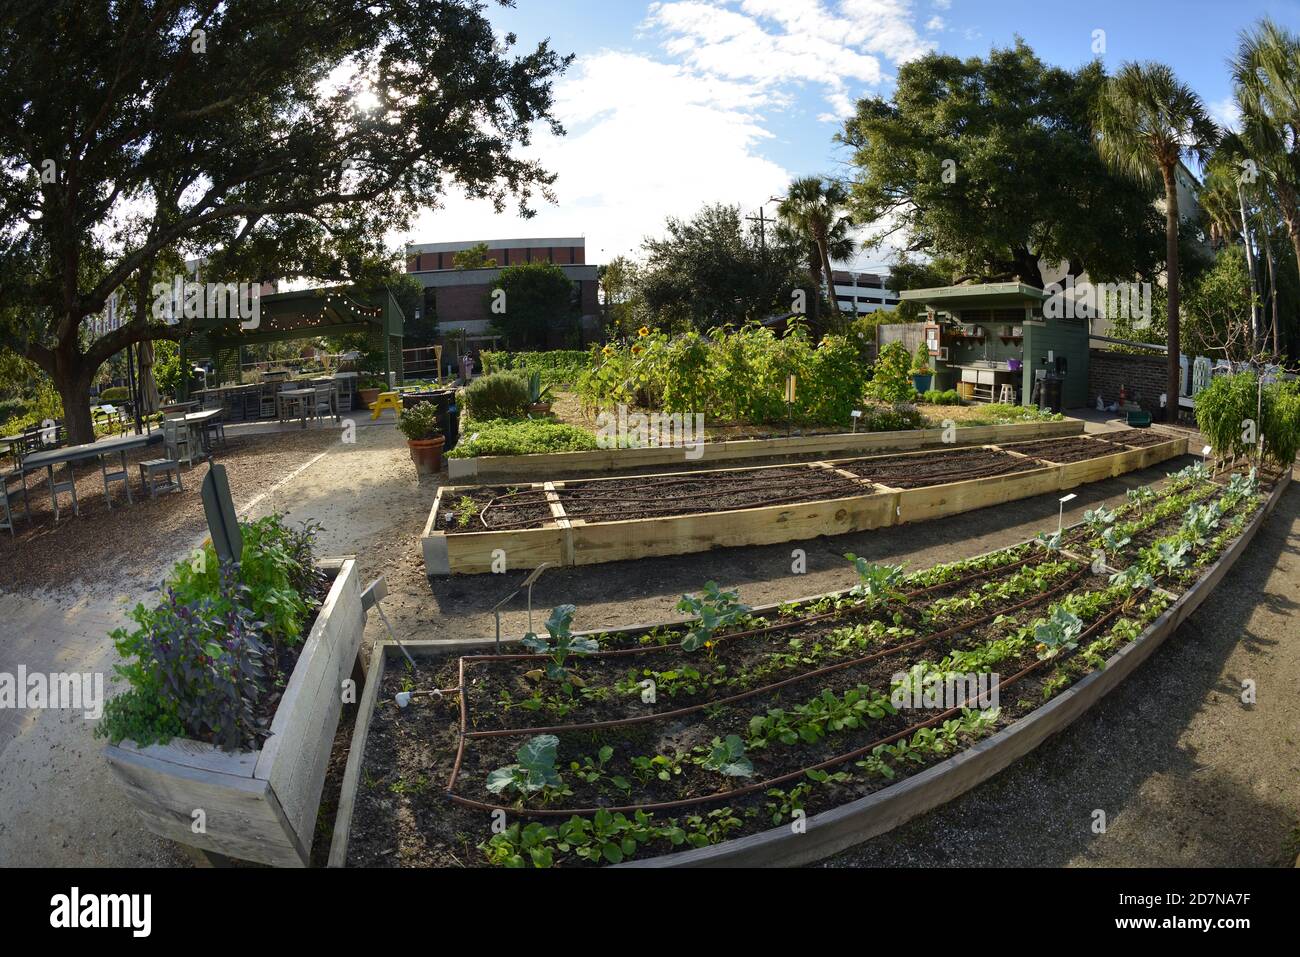 Urban Gardens mantenuto da agricoltori volontari con Mini Biblioteca, mais, Peppi, Avocados, e verdure altre, occhio in albero, zucche, ape, Hive, Pun. Foto Stock